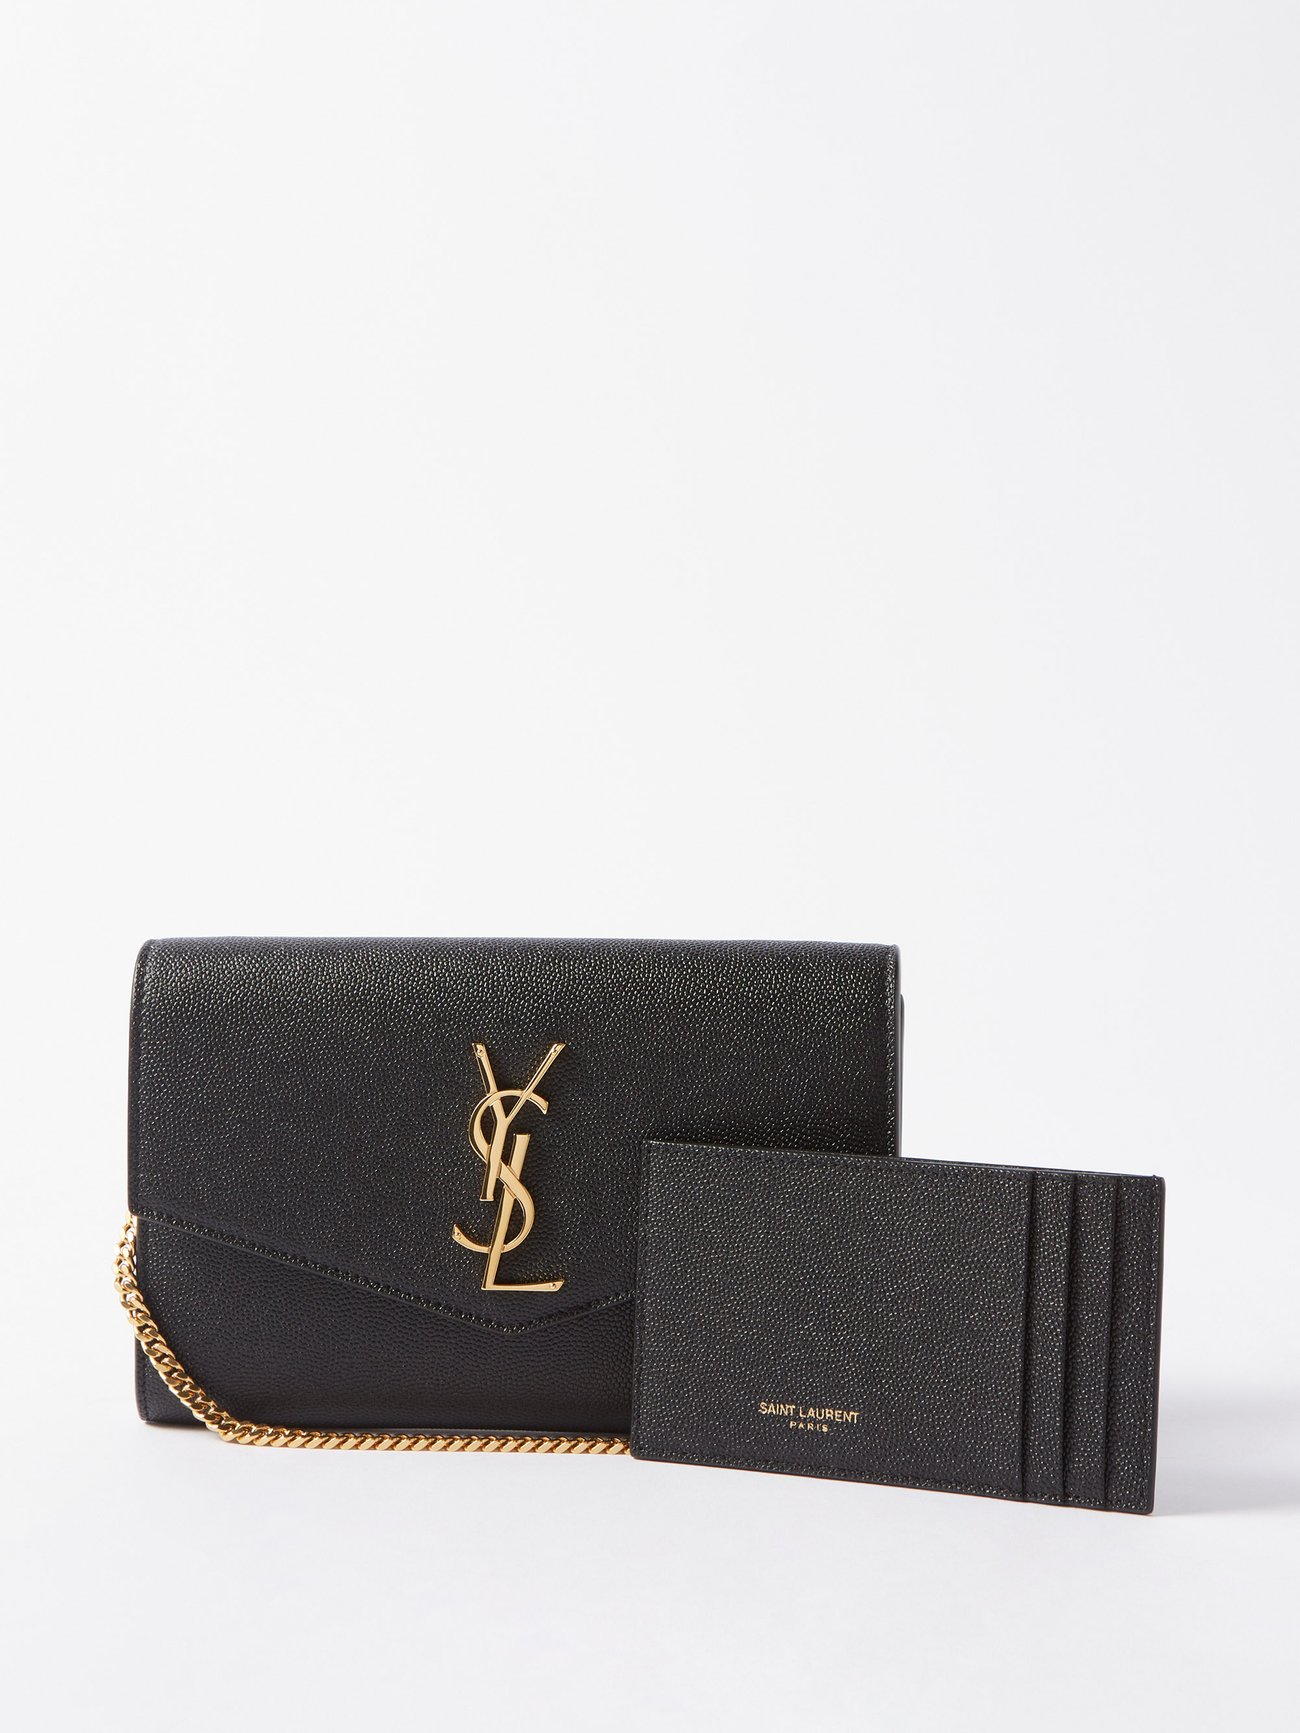 Buy Saint Laurent Handbags online - Women - 110 products